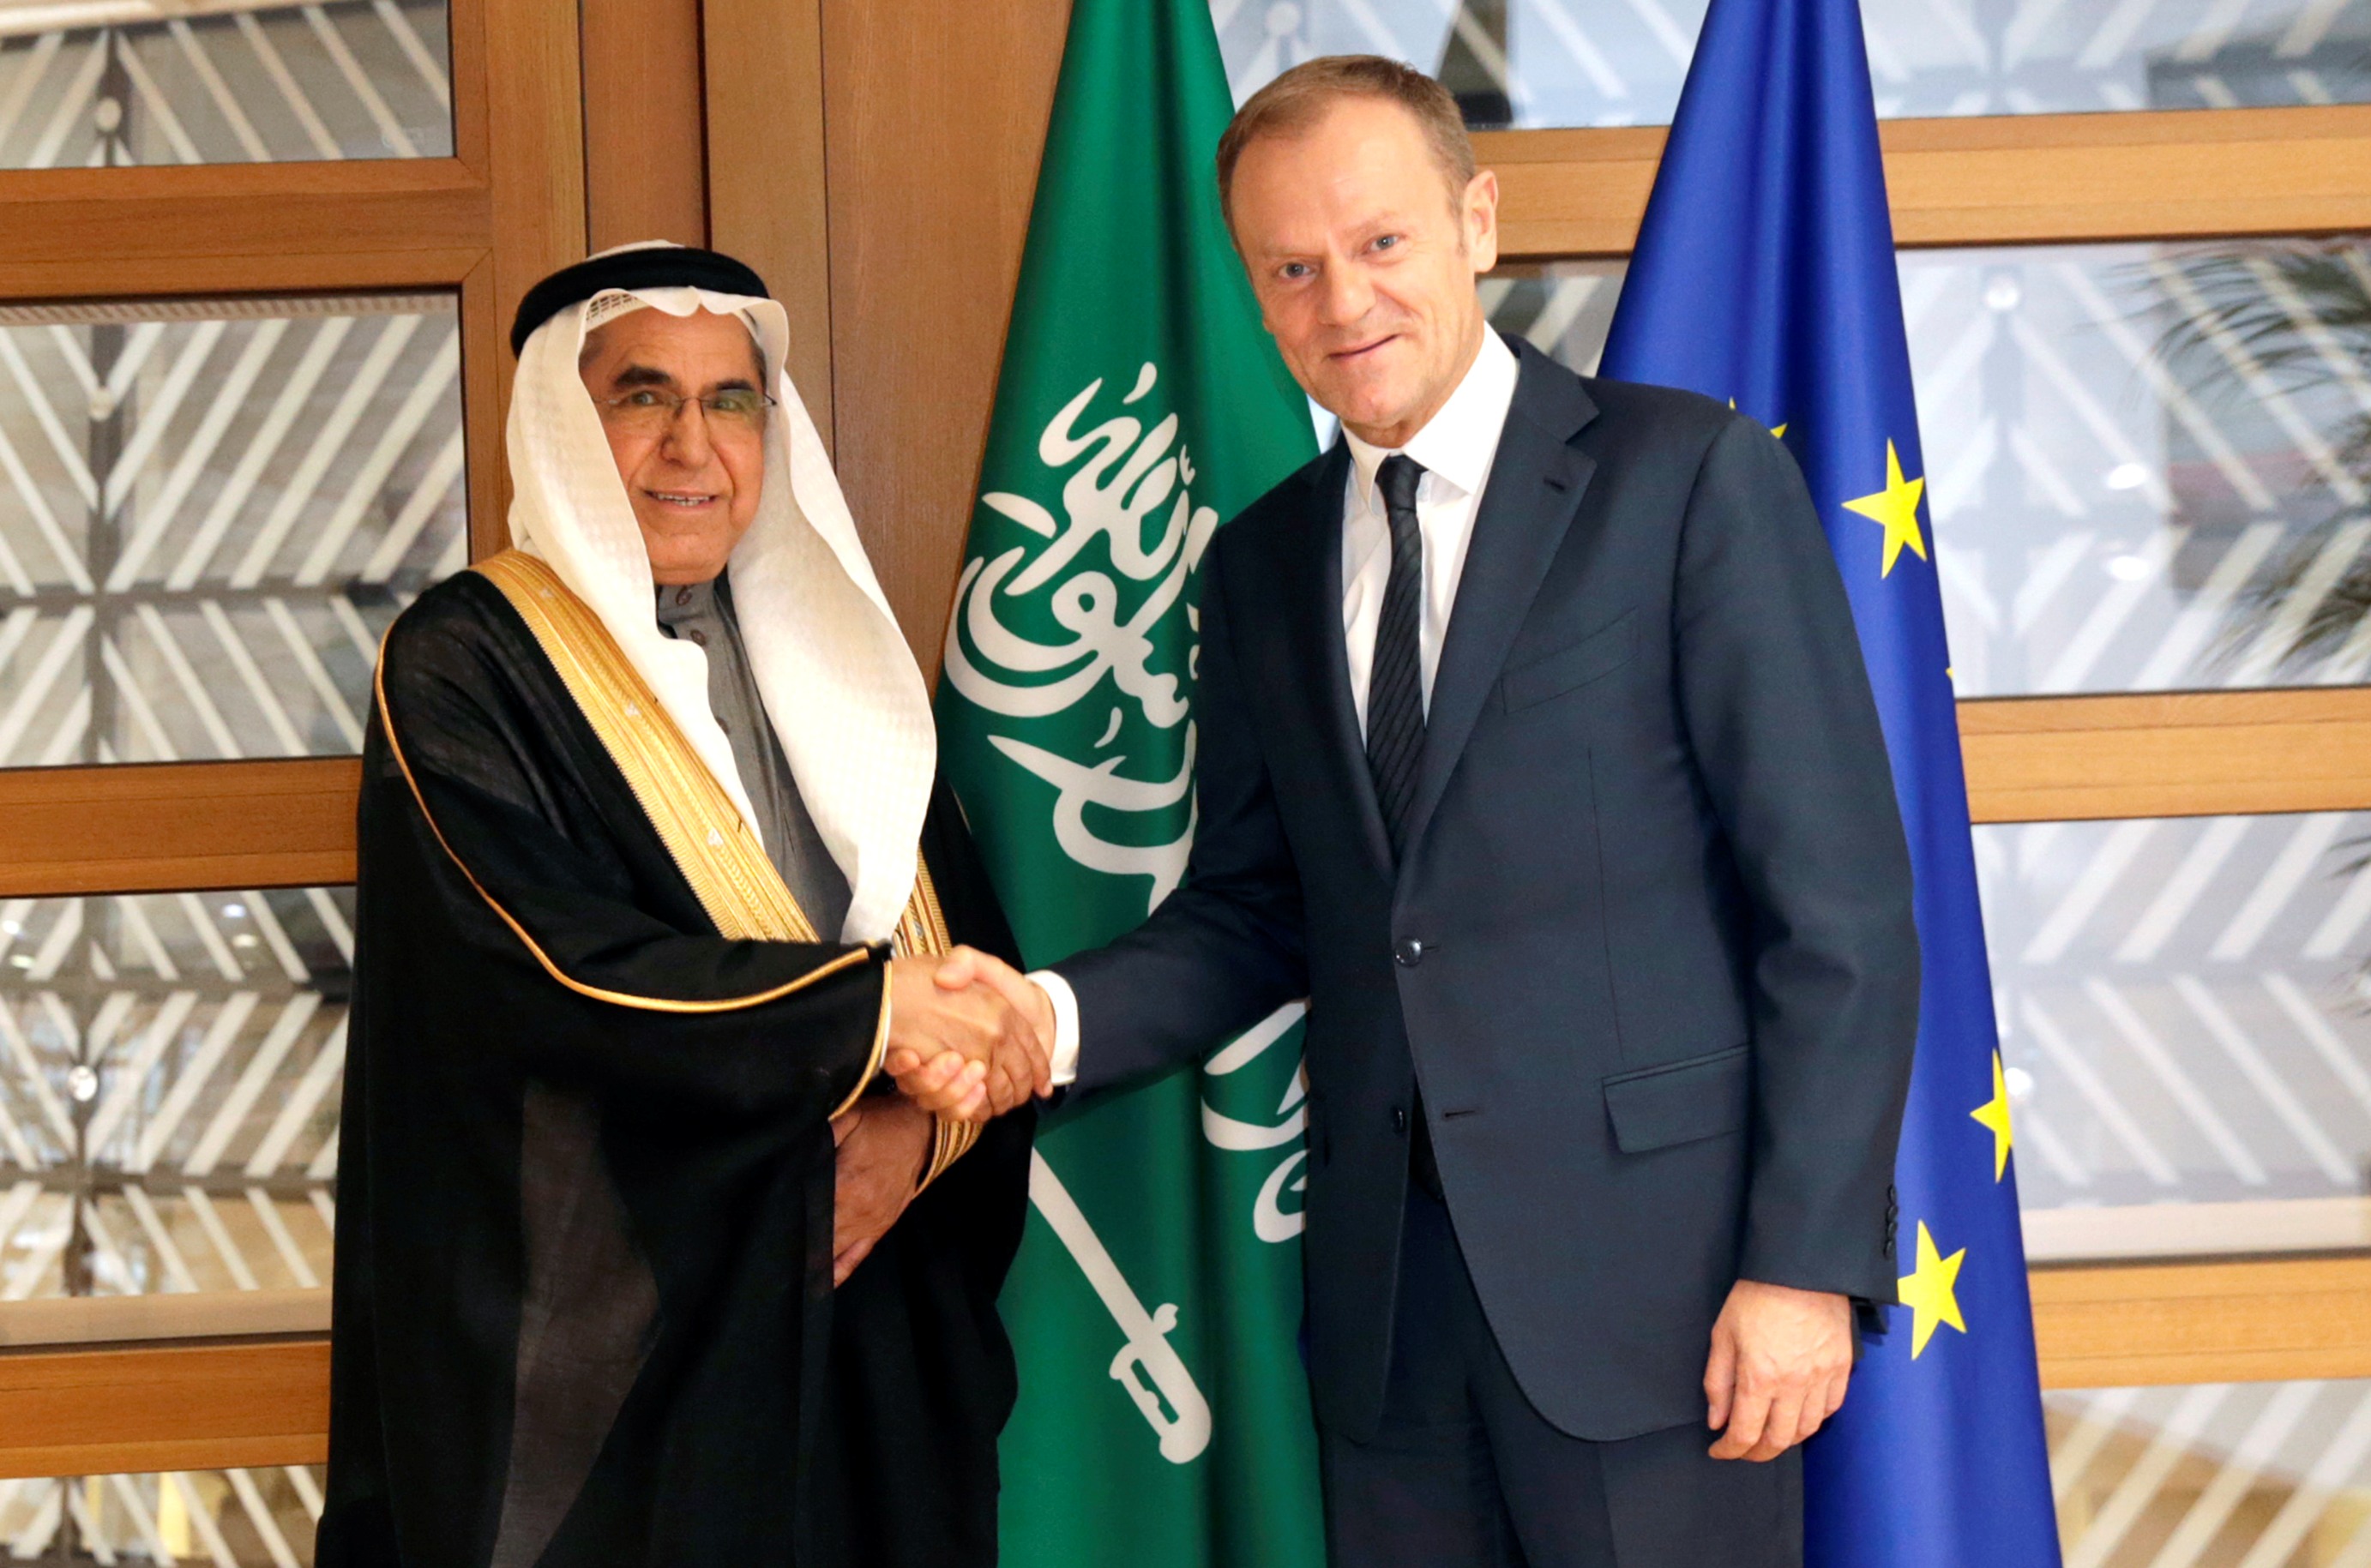 المندوب الدائم للمملكة العربية السعودية لدى الاتحاد الأوروبي السفير سعد العريفي خلال تقديمه أوراق اعتماده إلى رئيس المجلس الأوروبي دونالد تاسك